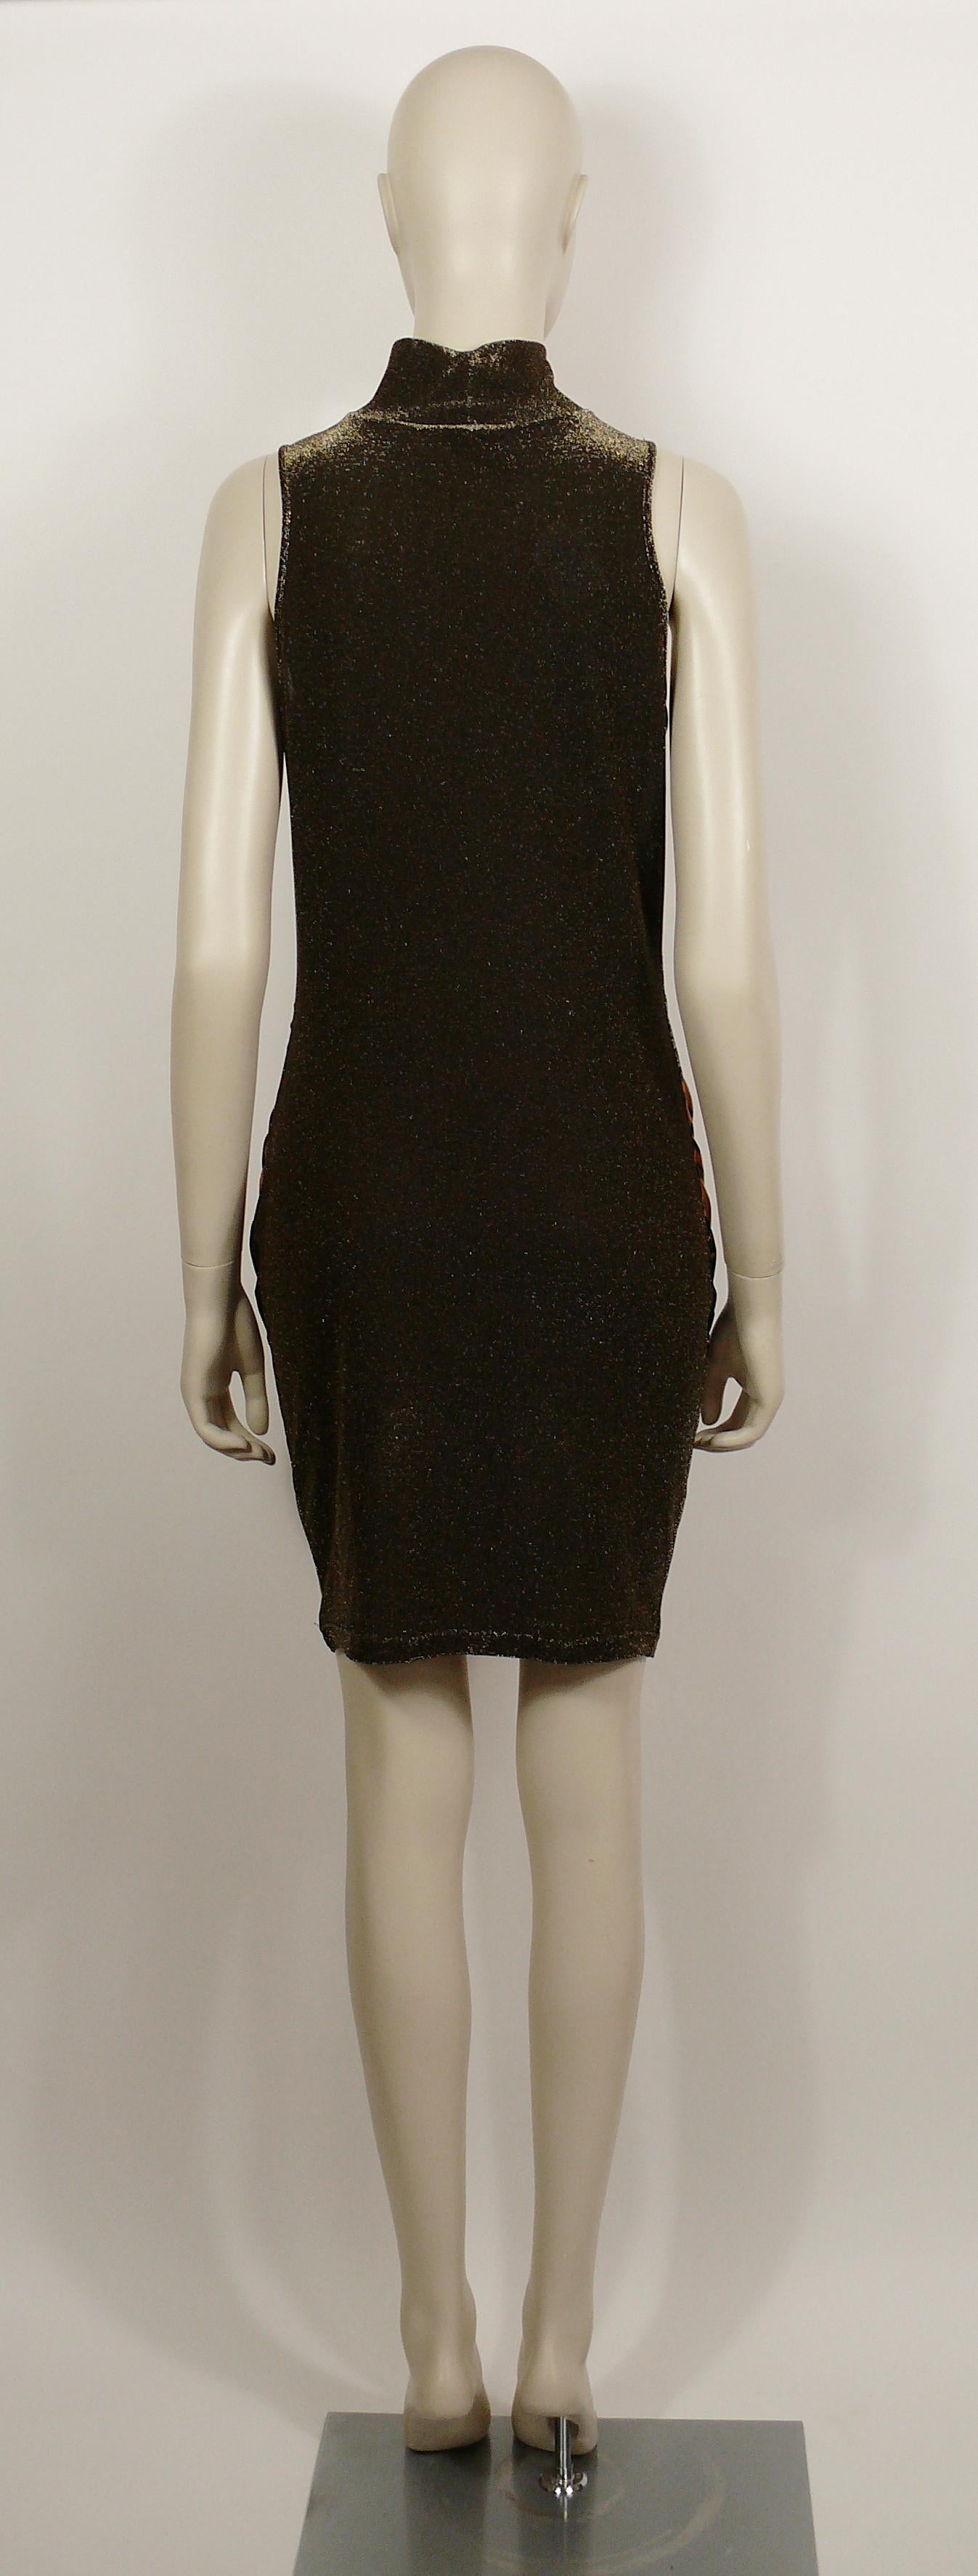 Women's Christian Lacroix Vintage Trompe L'Oeil Print Sleeveless Turtleneck Dress Size M For Sale